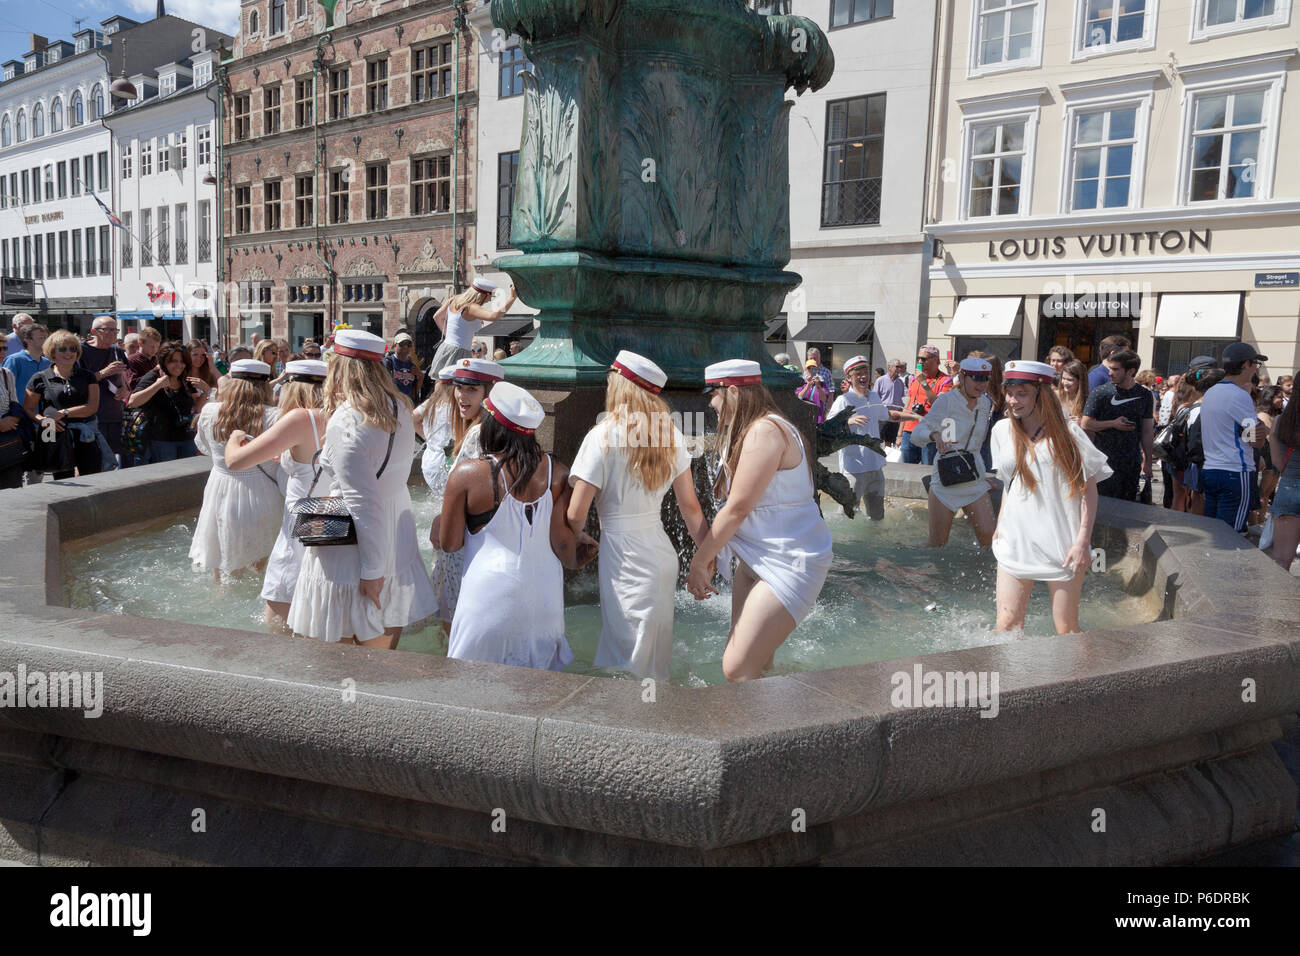 Copenhague, Danemark. 29 juin 2018. Les étudiants danois célèbrent leur diplôme d'études secondaires / grammer et prennent le plongeon. Une danse et un plongeon ou une plongée dans l'eau froide de la fontaine Stork (Storkespringvandet) sur la rue piétonne, Stroeget, est un élément traditionnel le jour de la célébration pour les étudiants diplômés du Grand Copenhague. Elle fait souvent partie de la longue tournée en camion épuisante et pleine d'esprit qui visite le domicile de chaque étudiant pour des rafraîchissements. Crédit : Niels Quist/Alay Live News Banque D'Images